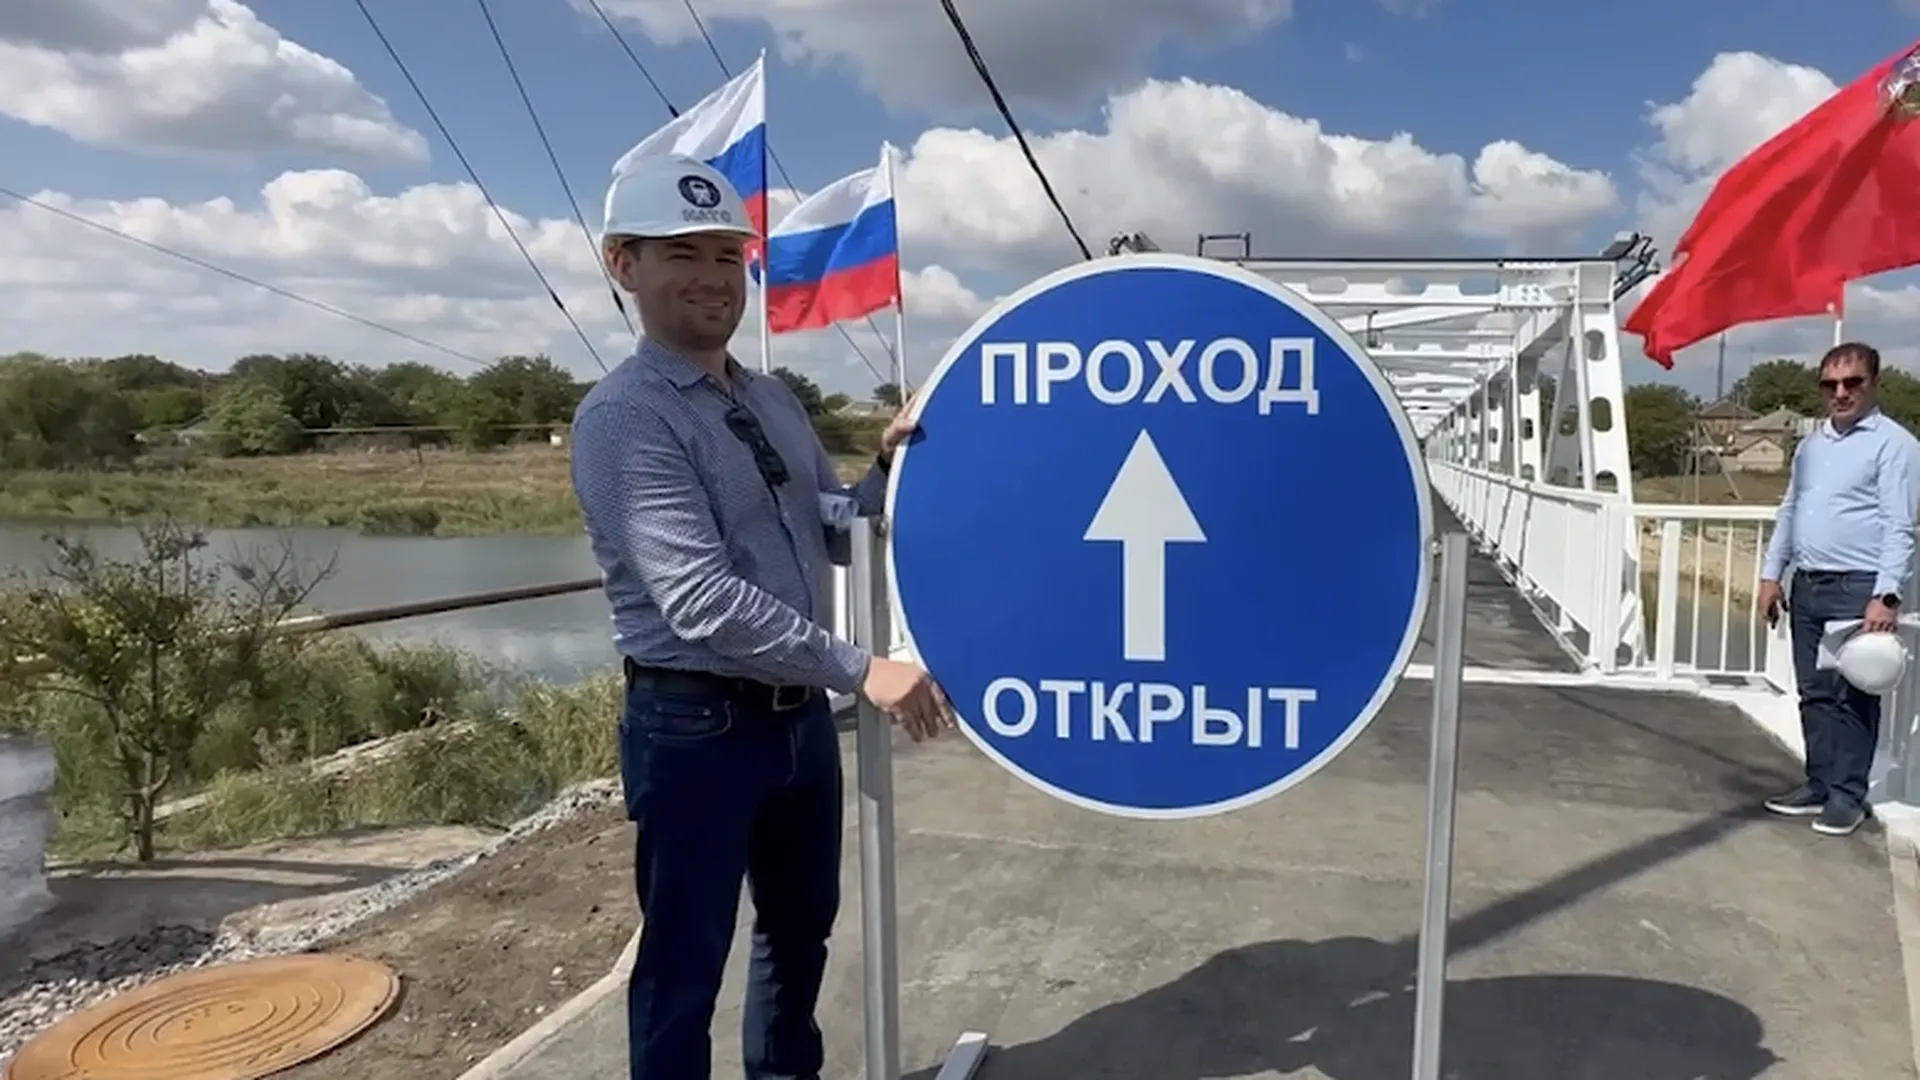 Пешеходный мост строителей из Подмосковья соединил две части Новоазовска